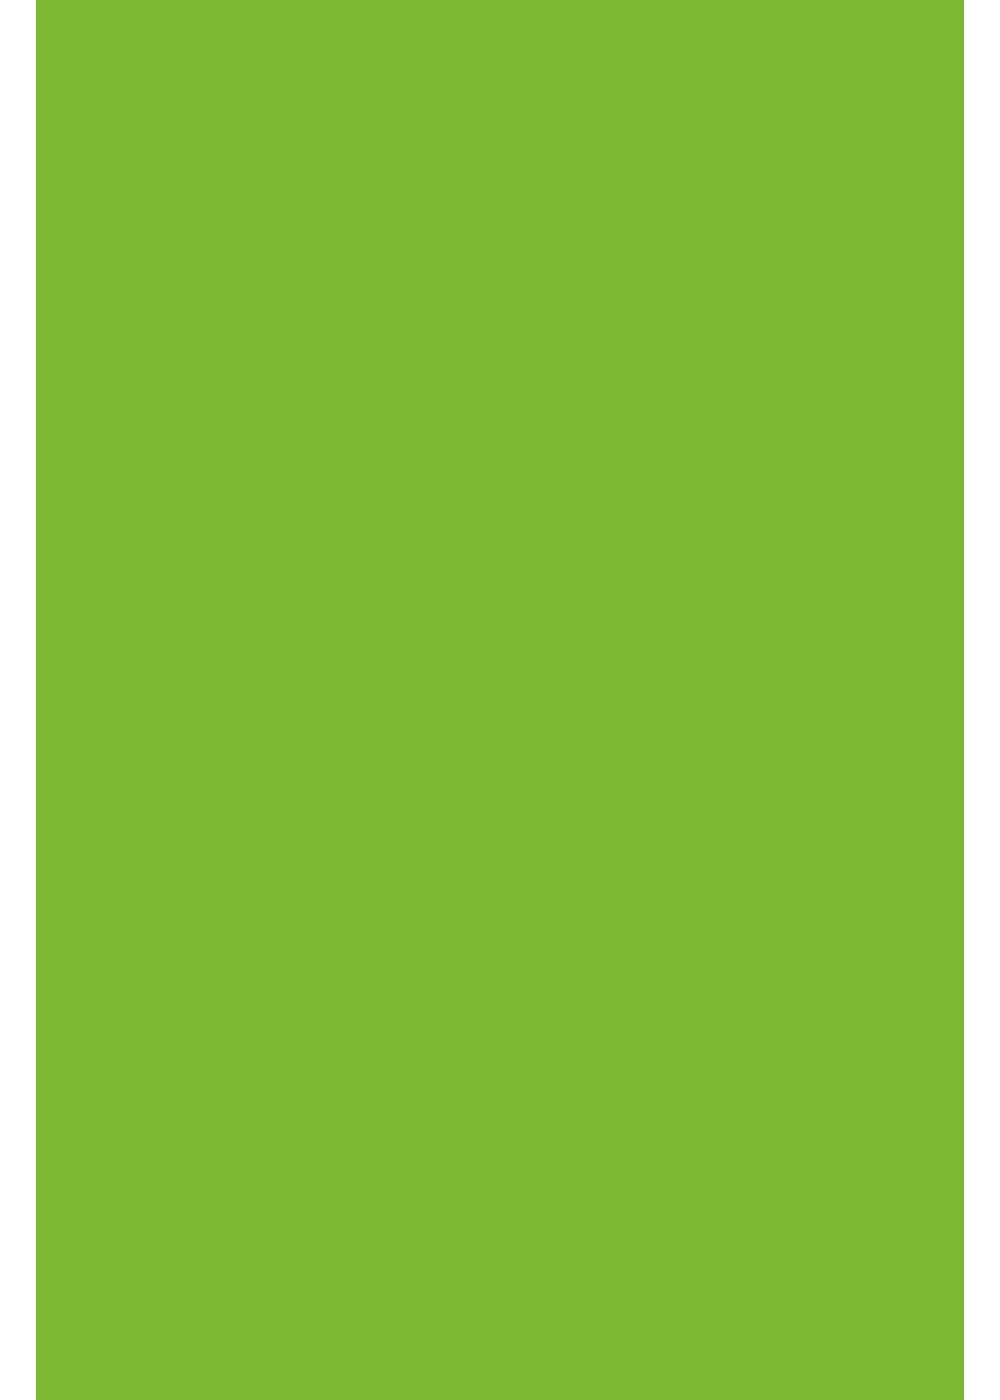 Transferfolie/Textilfolie Hilltop zum perfekt Plottern Apfelgrün zum - Transparentpapier Aufbügeln A4